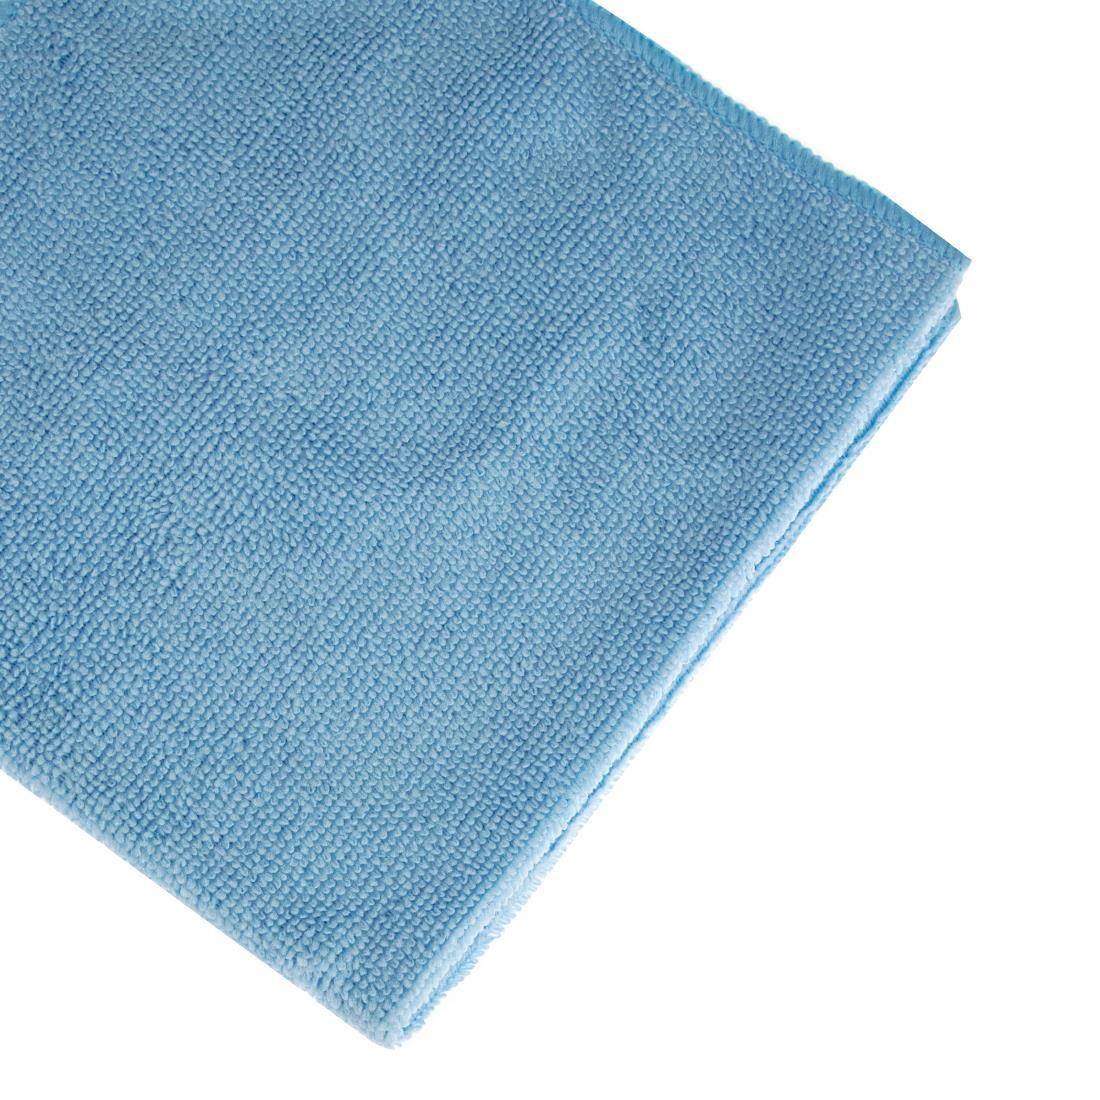 Jantex Microfibre Cloths Blue (Pack of 5) - DN839  - 3